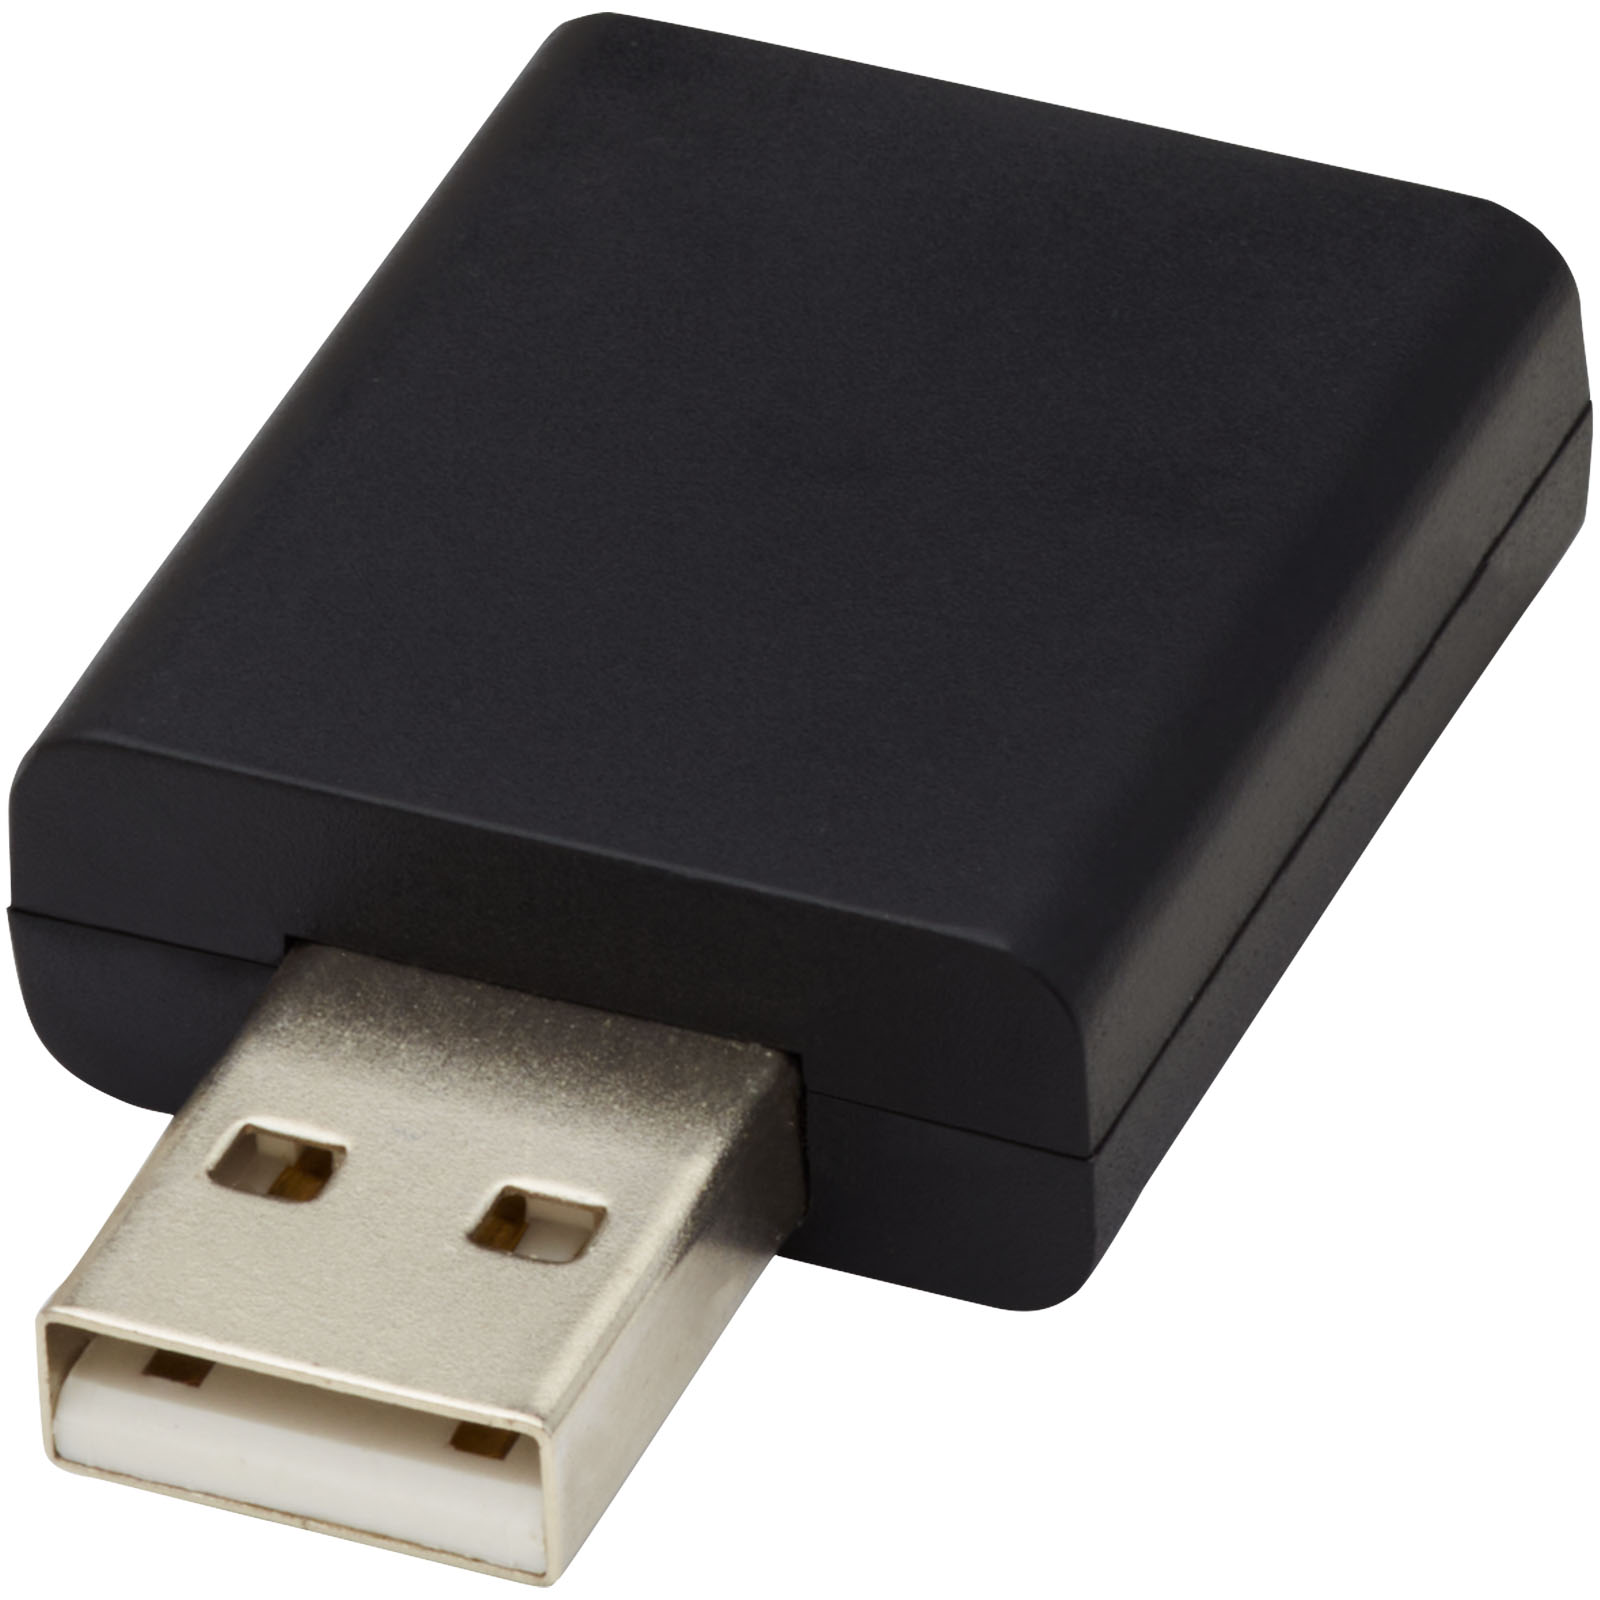 Advertising Computer Accessories - Incognito USB data blocker - 0